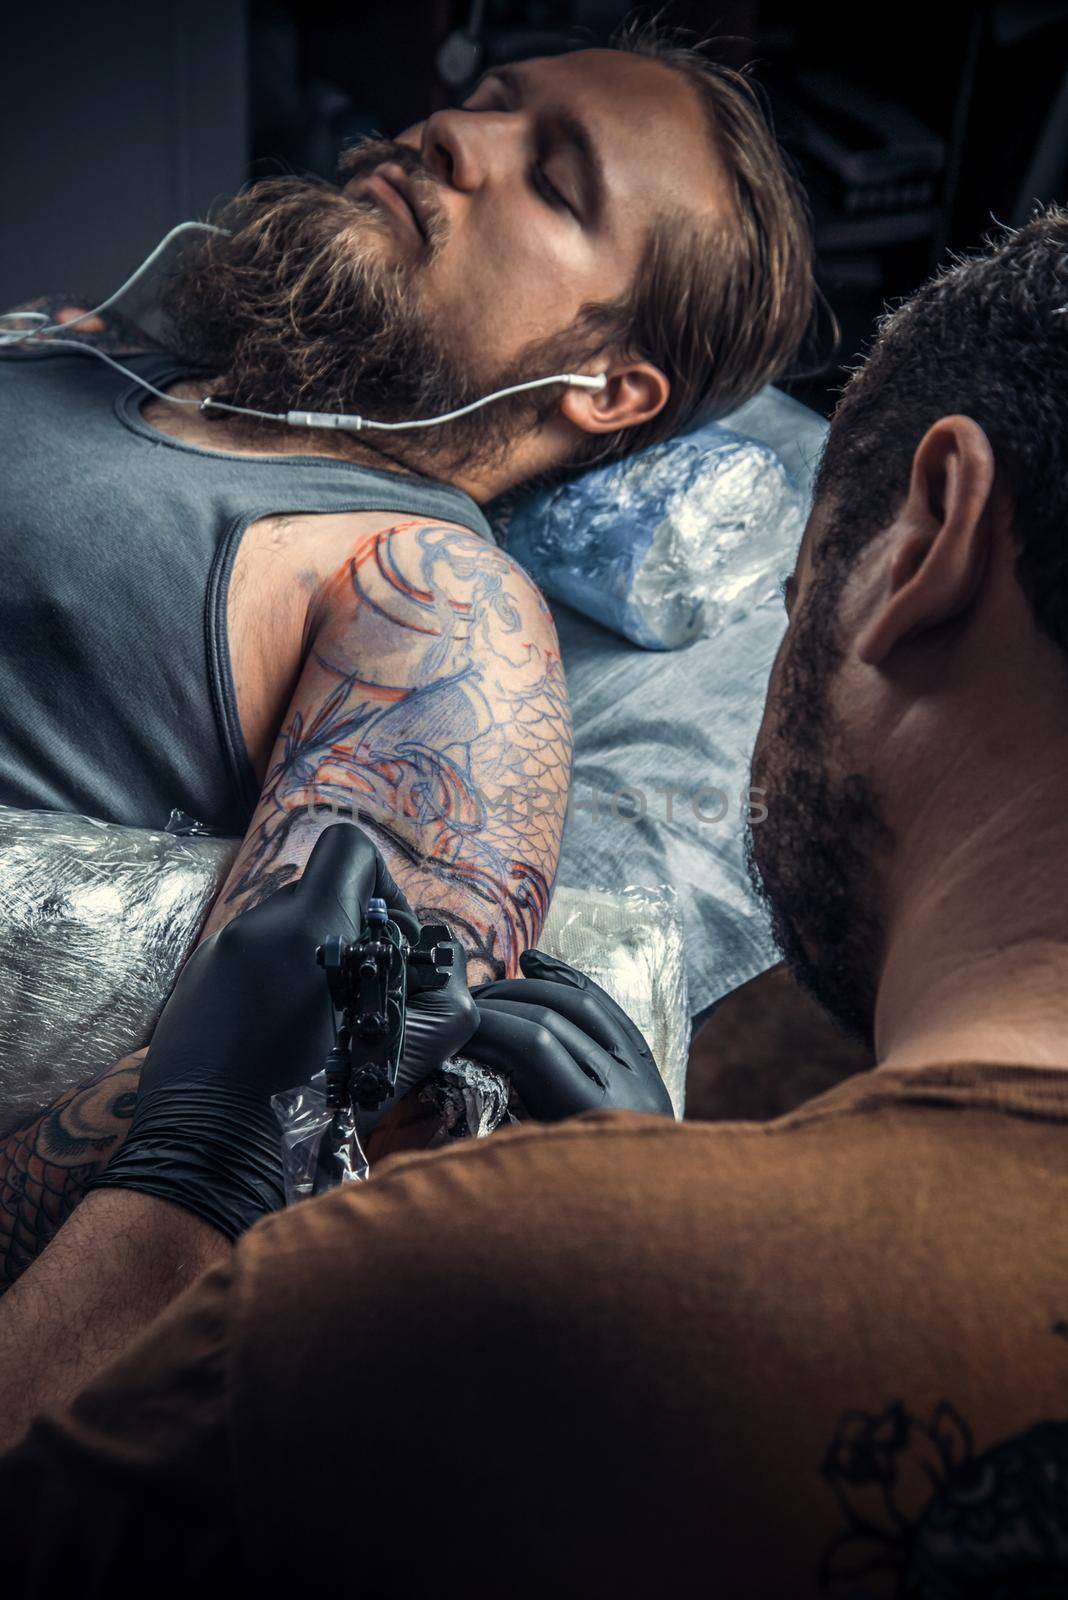 Professional tattooer create tattoo in tattoo studio./Tattoo specialist working tattooing in tatoo salon.